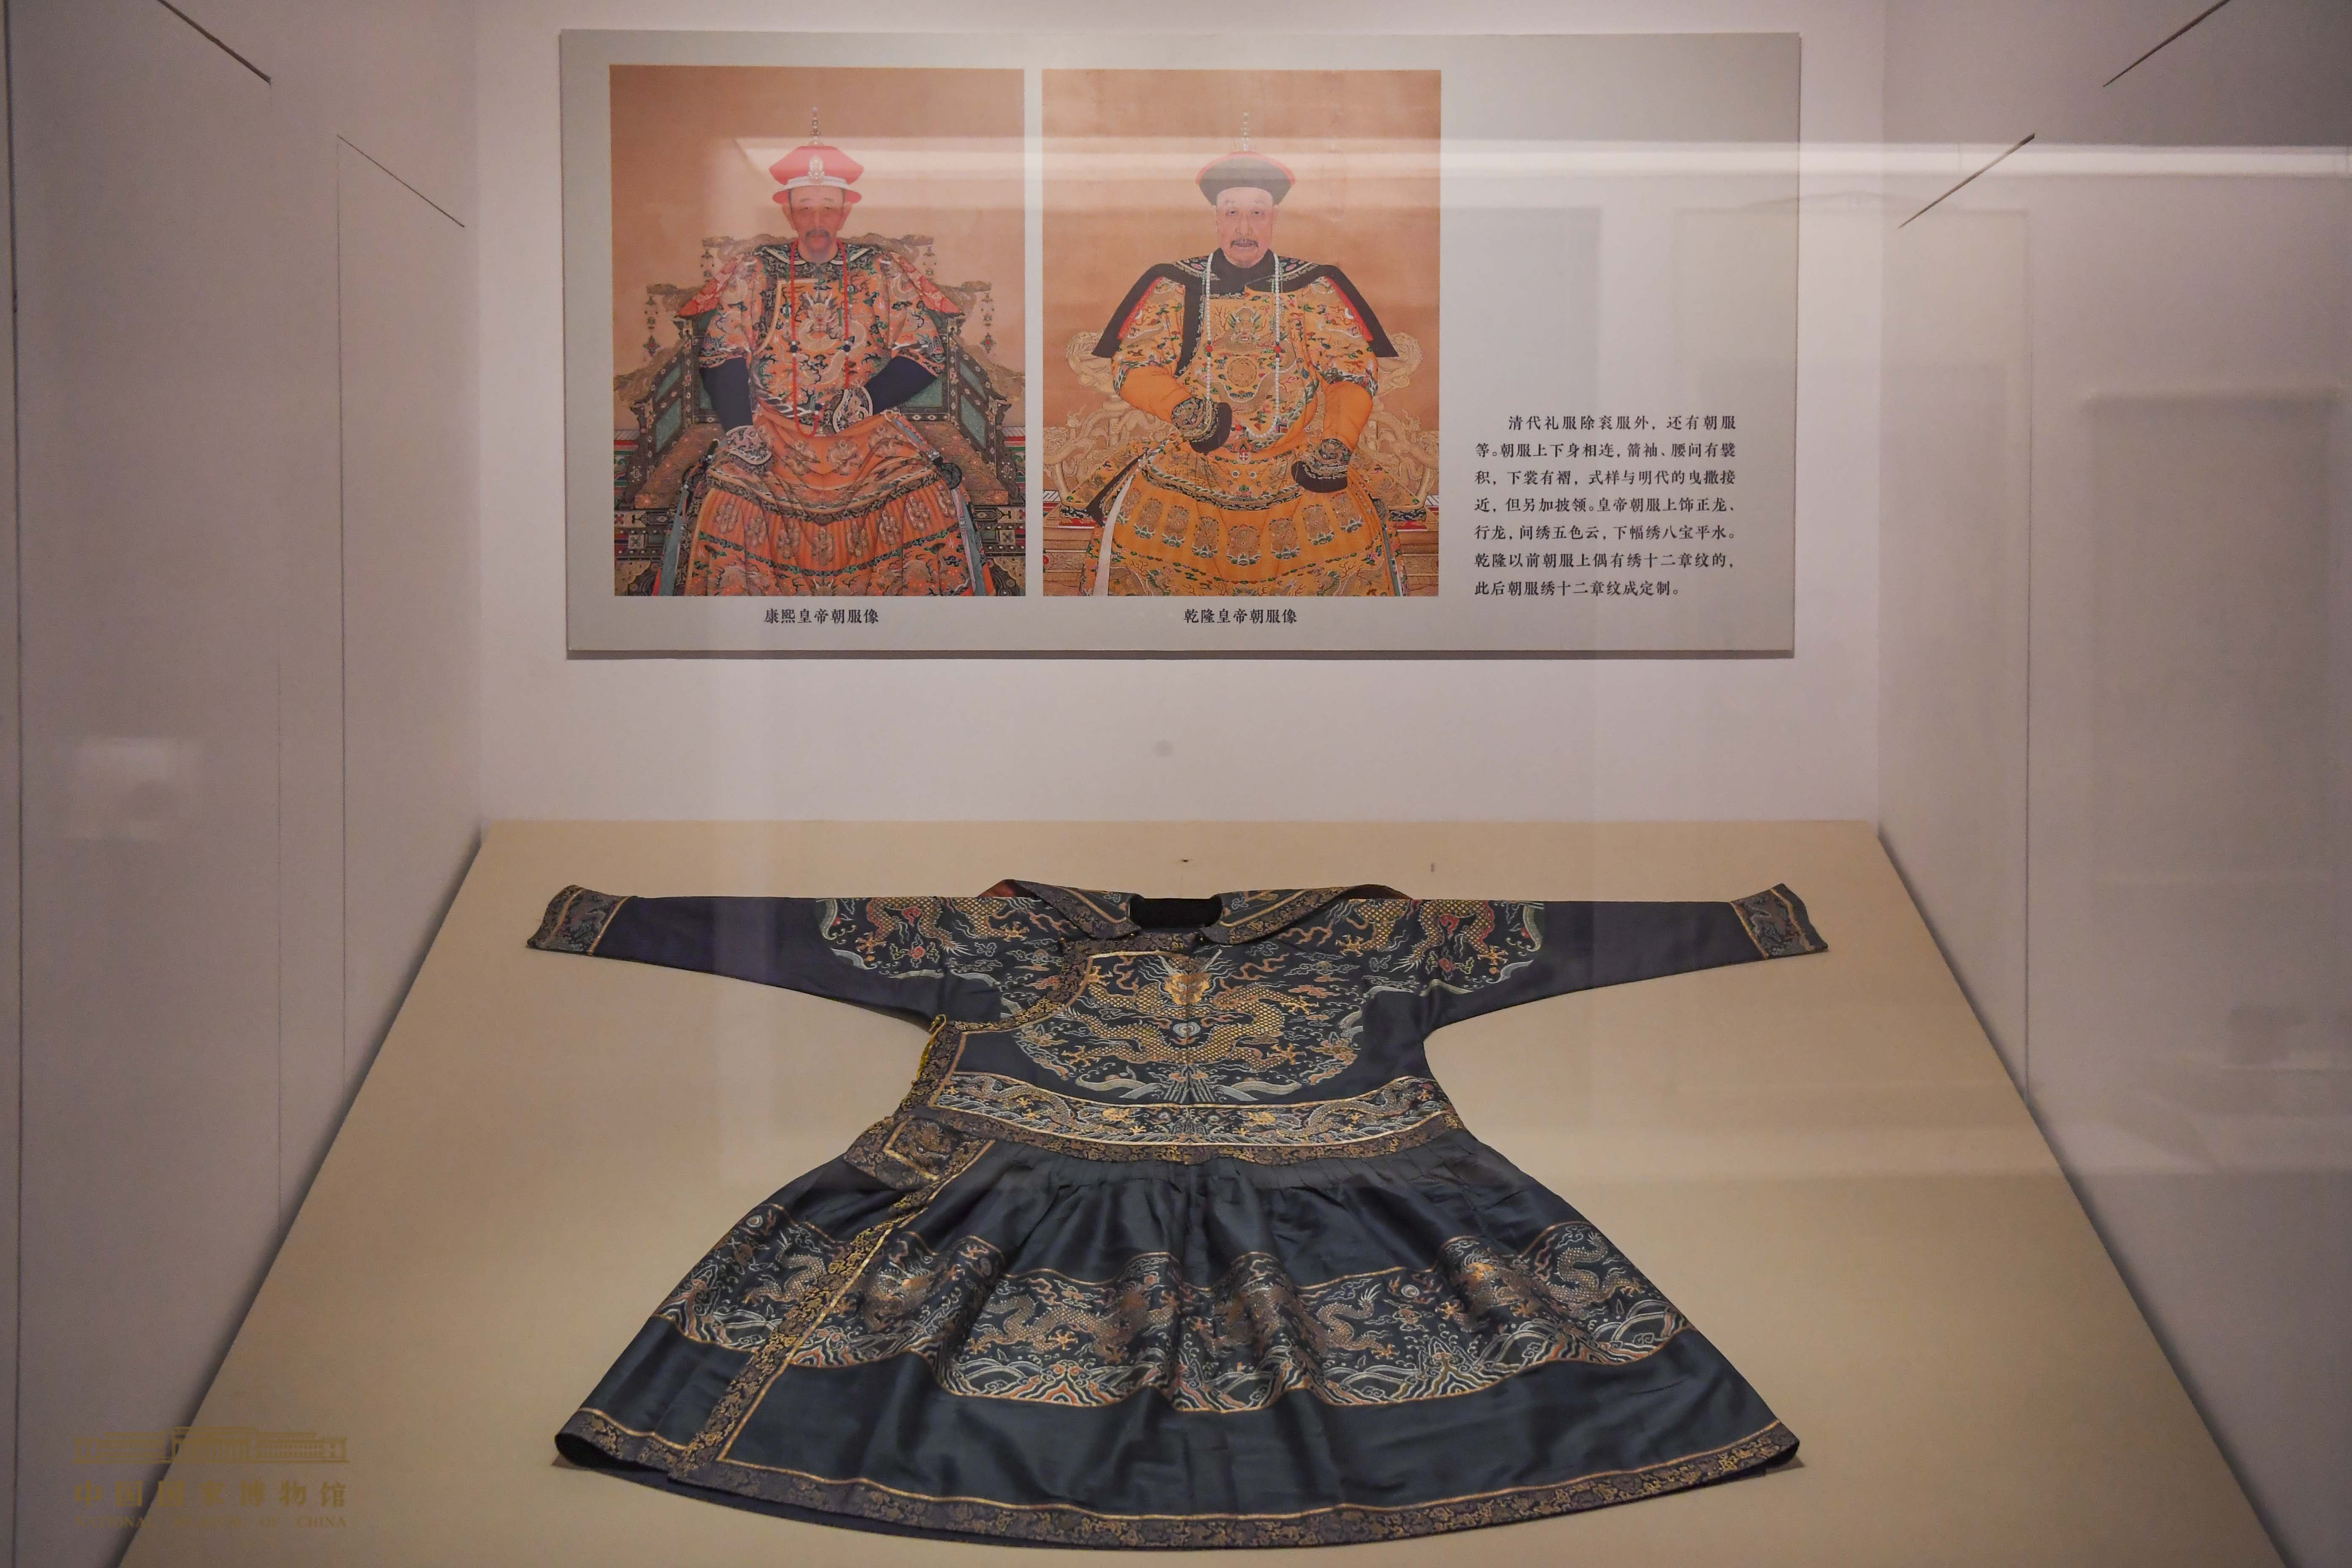 国博里的汉服风尚 130件文物带你领略历代服饰变化